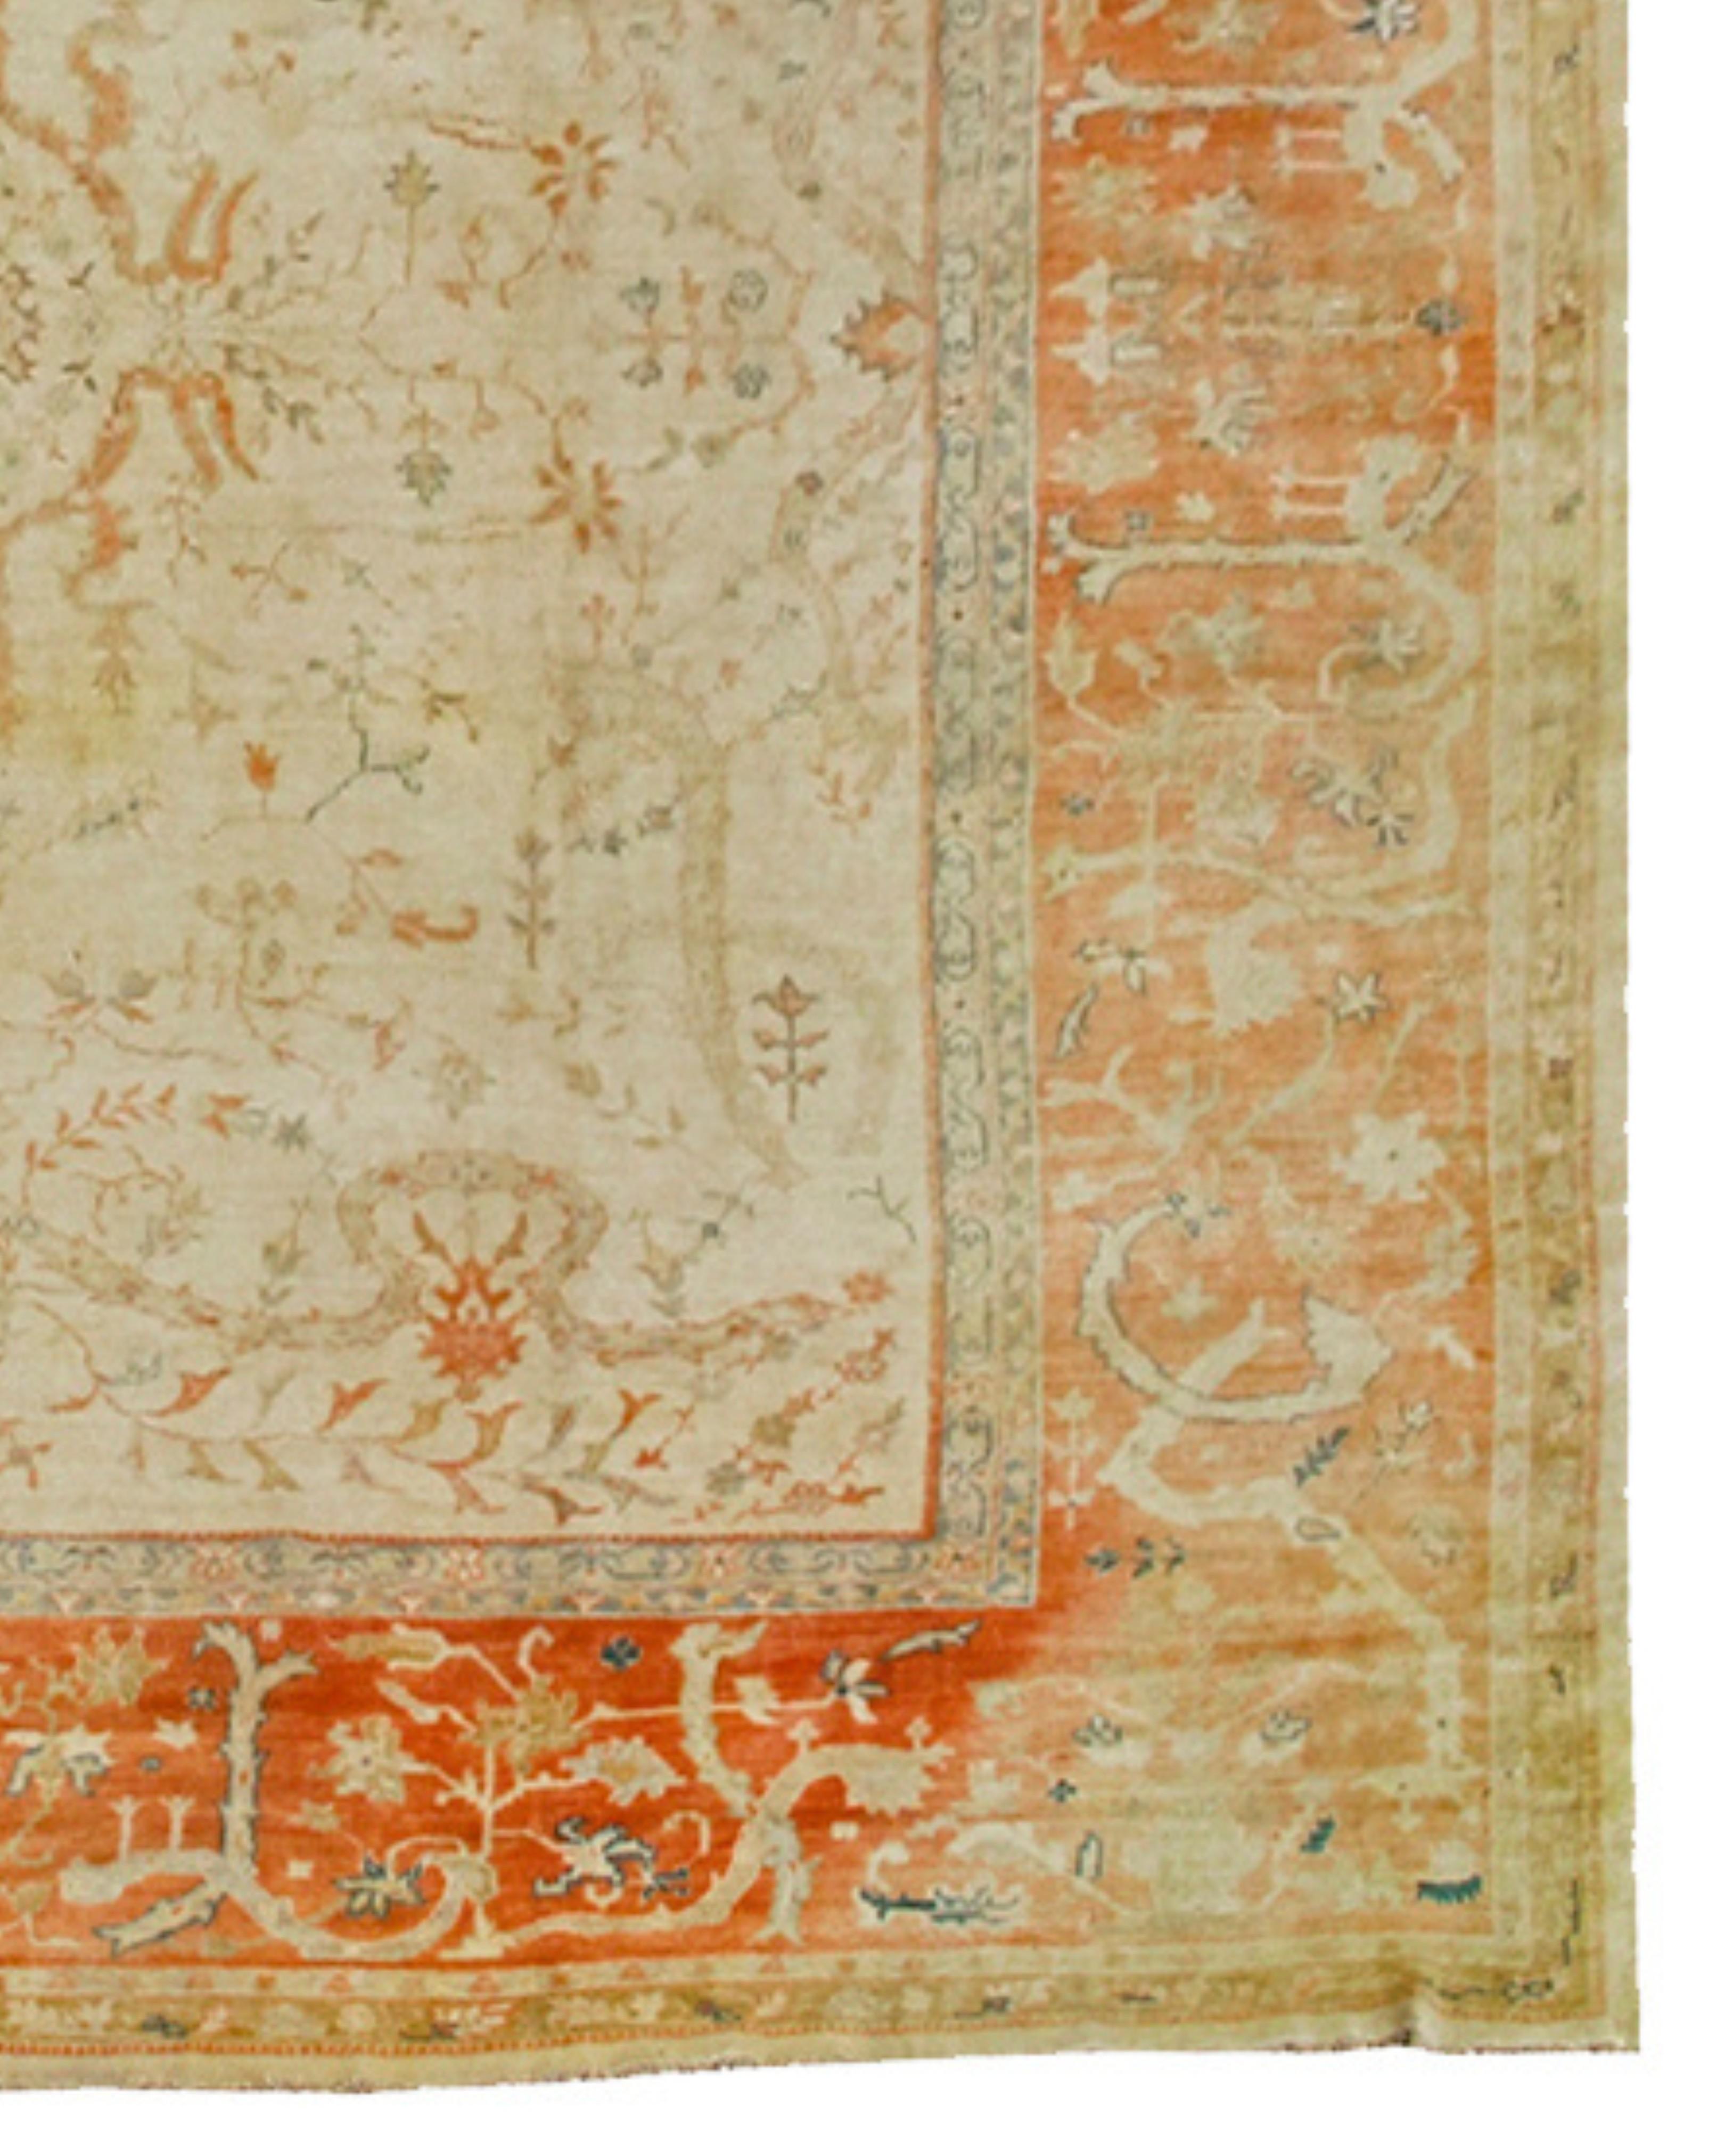 Grand tapis d'Anatolie surdimensionné, début du 20e siècle

Les tapis Borlu anciens d'Anatolie occidentale combinent les tons doux des pièces Oushak voisines avec un tissage plus robuste et plus serré. Le fond ivoire pâle de cette pièce est encadré